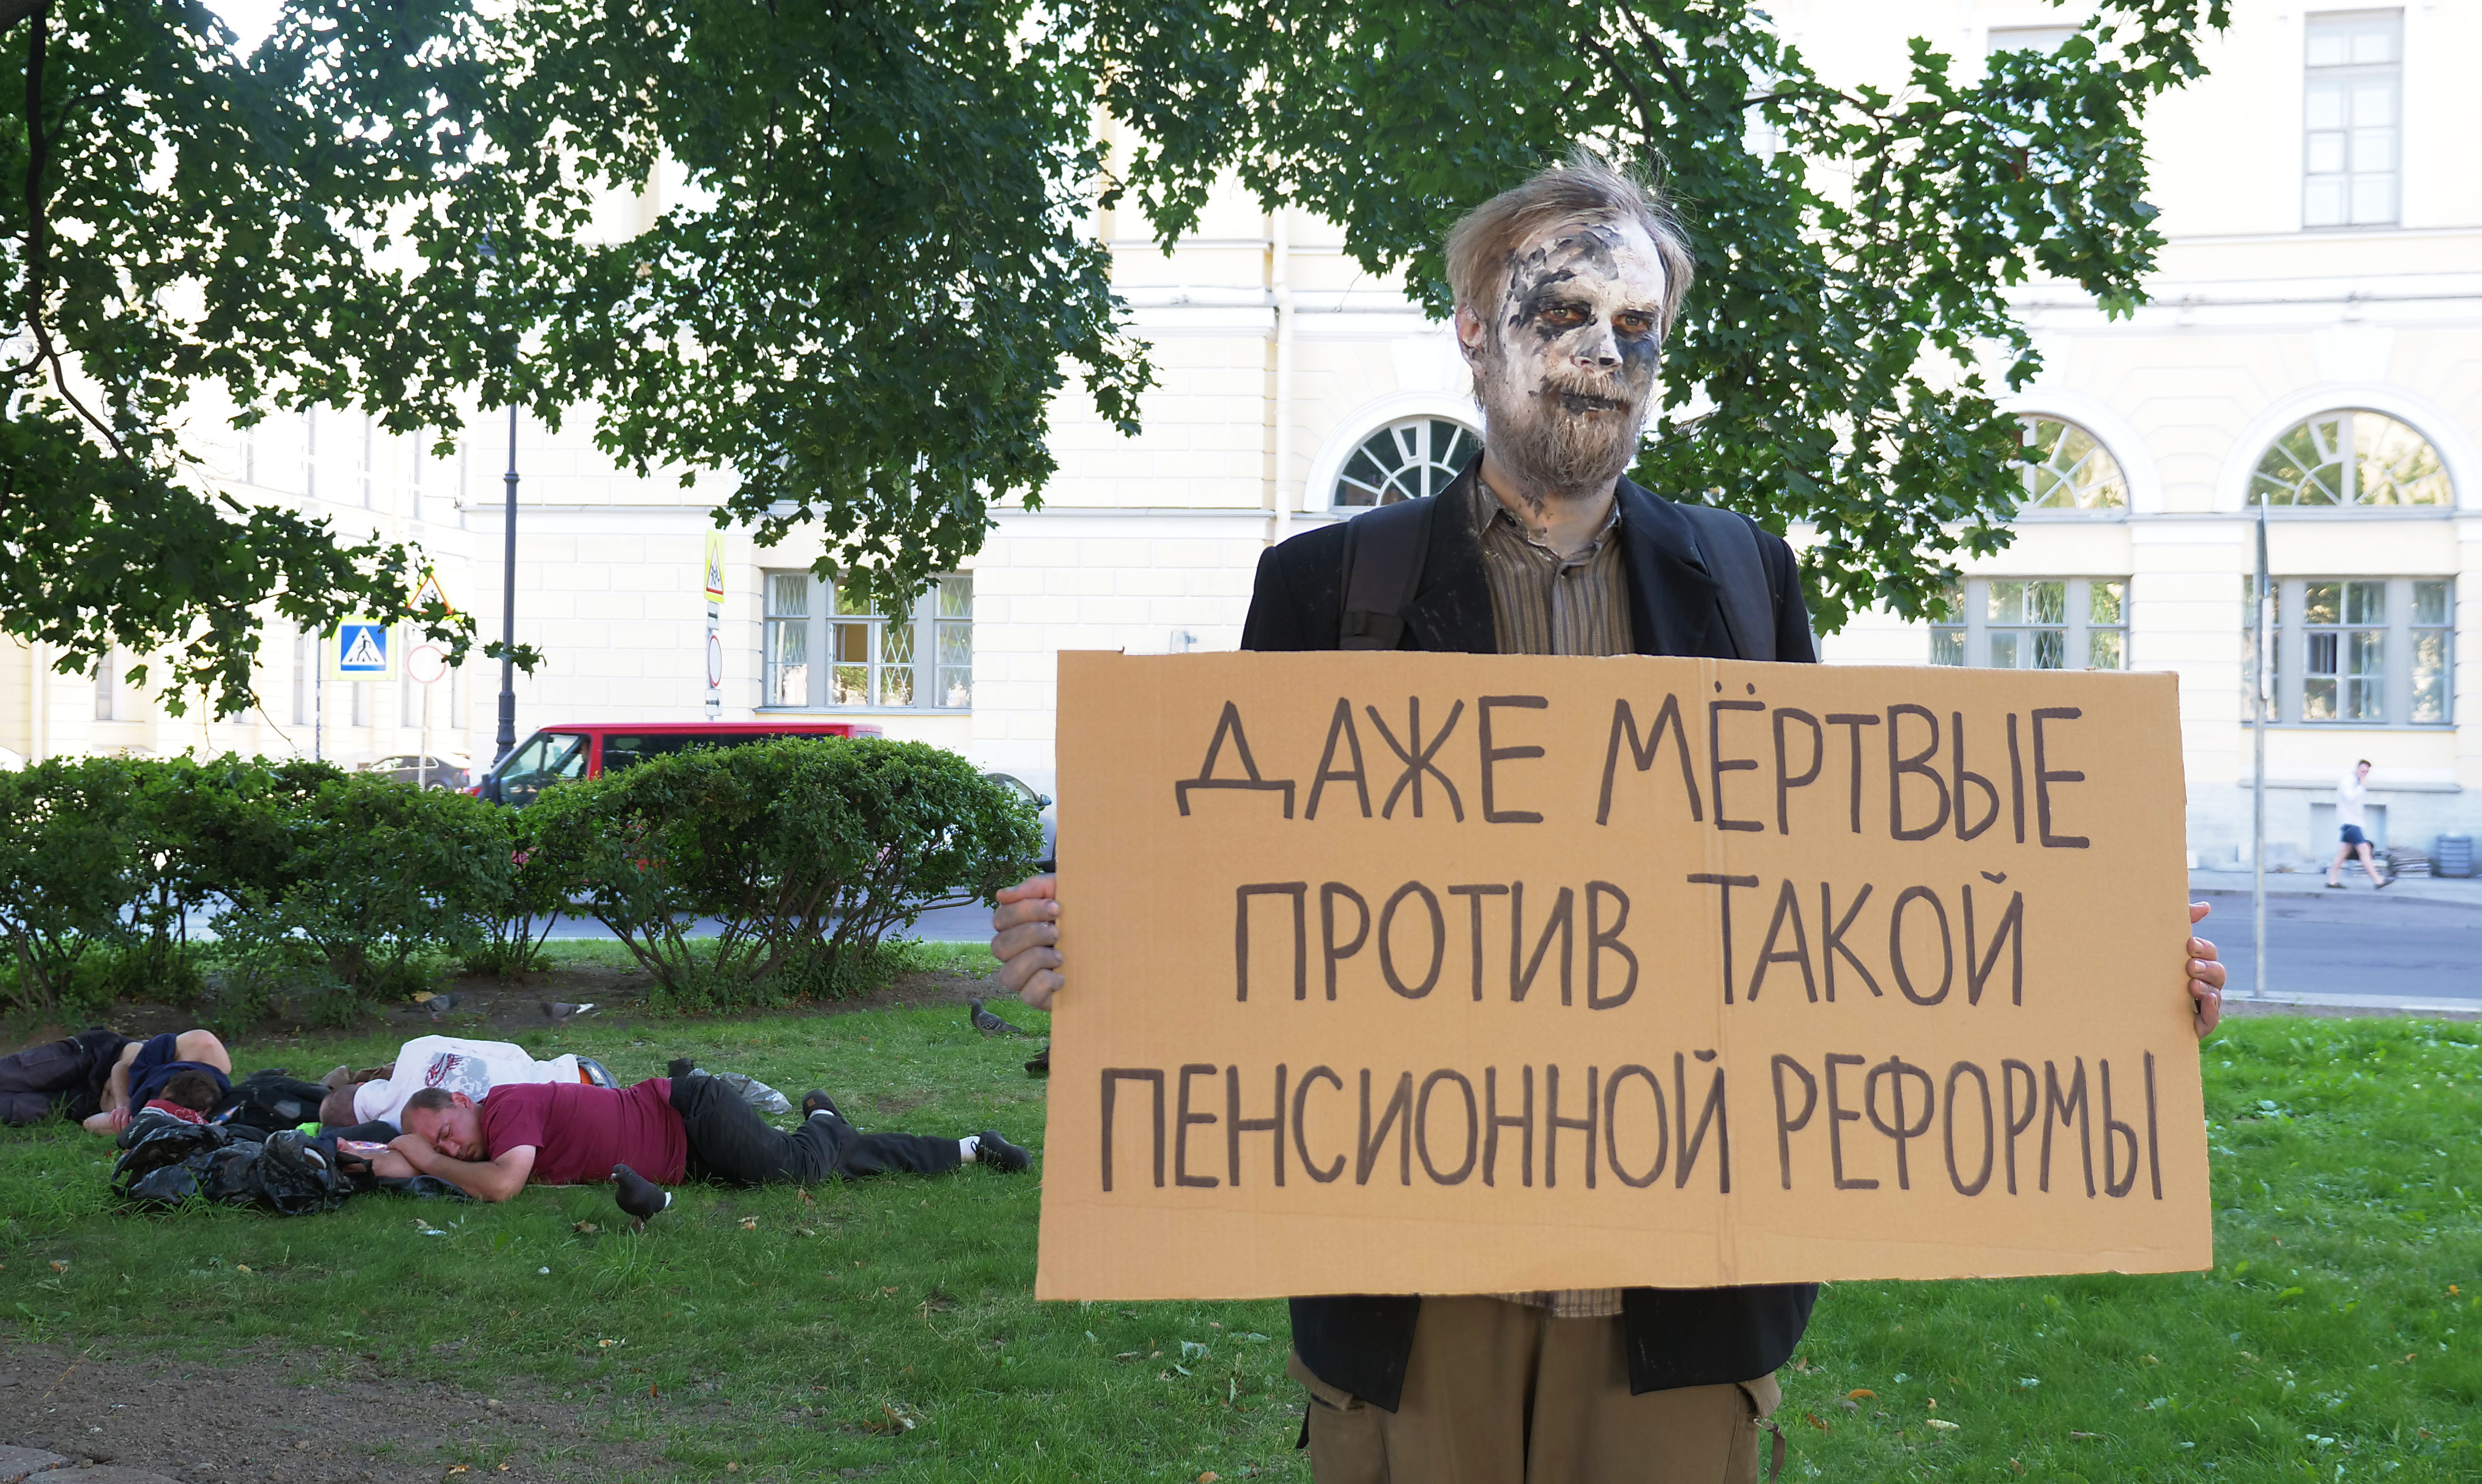 даже мёртвые против такой пенсионной реформы, Петербург, 18/7/2018, фото: Кристина Кужахметова